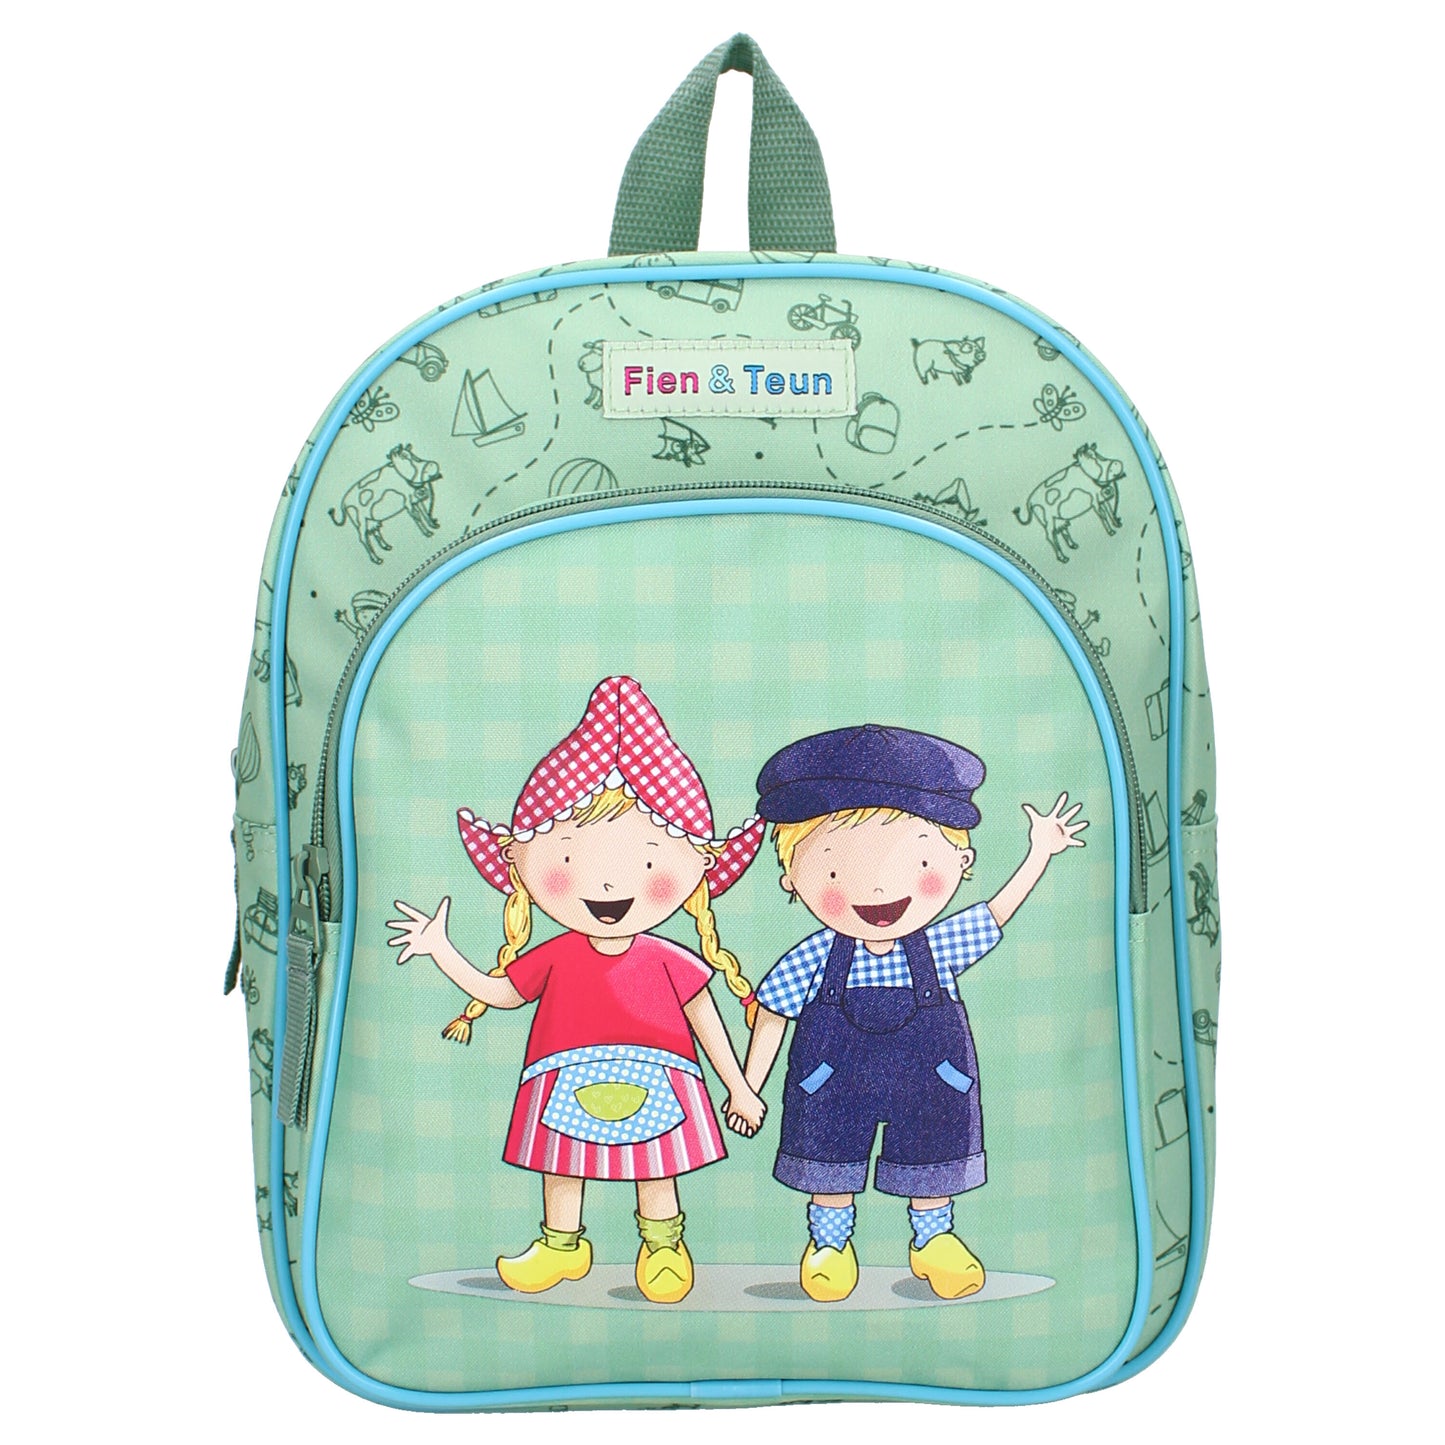 Fien & Teun - Backpack - Blue